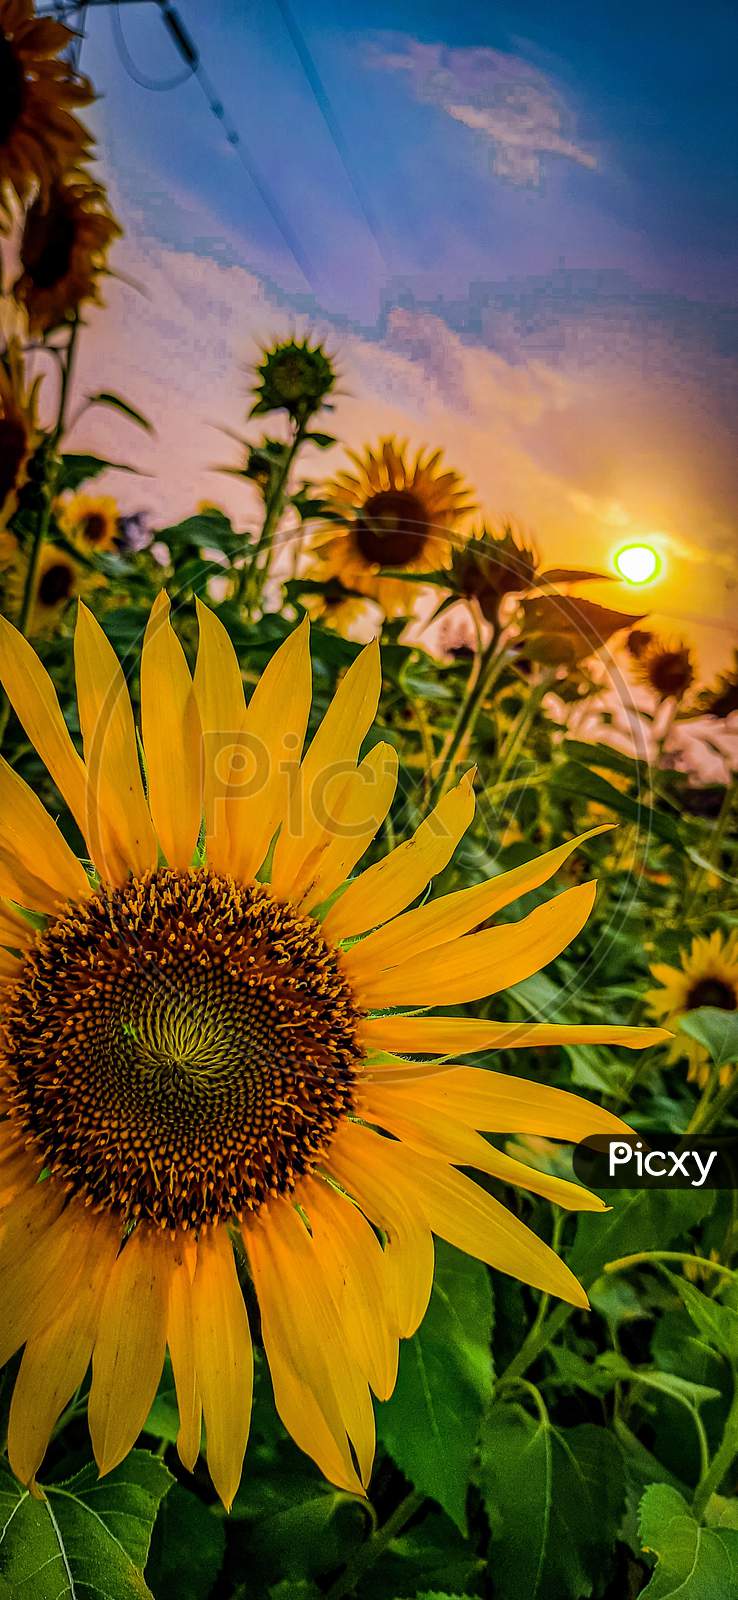 Sun Flower-- multiple colour in one flower